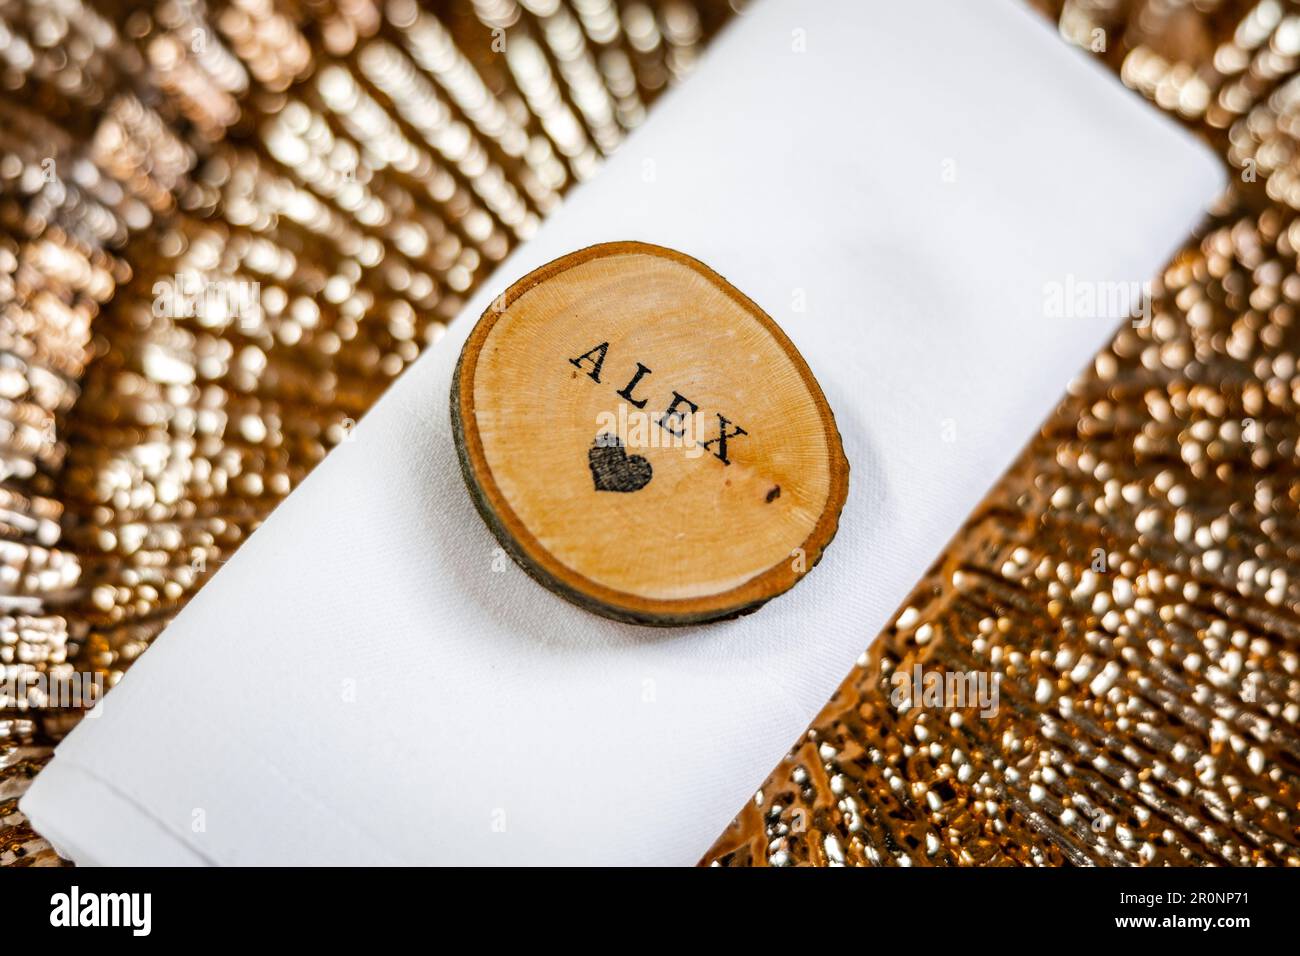 Le nom Alex - superbe assiette à dîner plaquée or avec étiquette en bois Alexander et amour coeur en bois haché log Banque D'Images